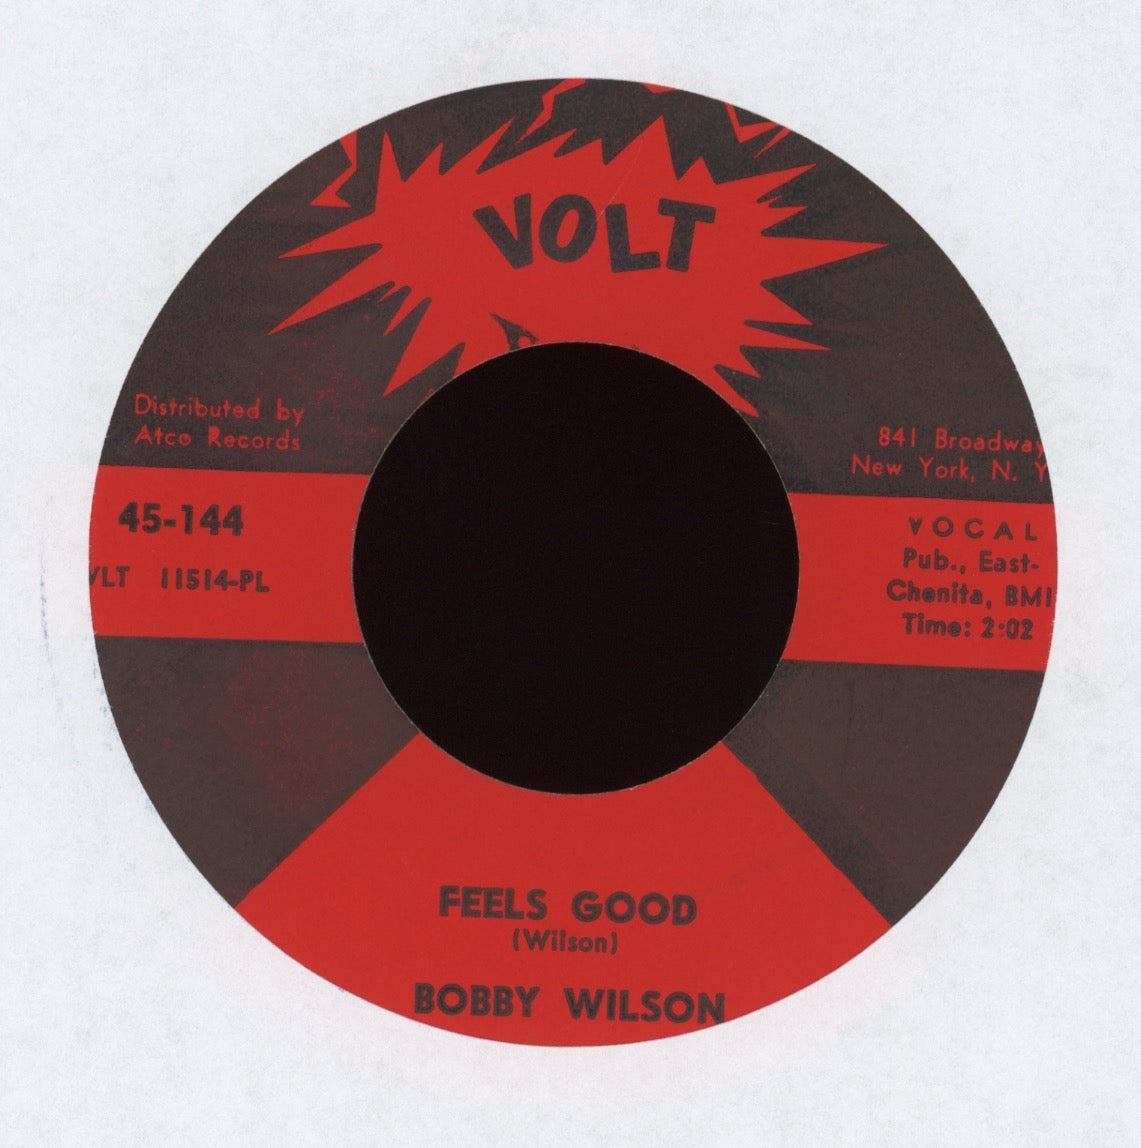 Bobby Wilson - Feels Good on Volt